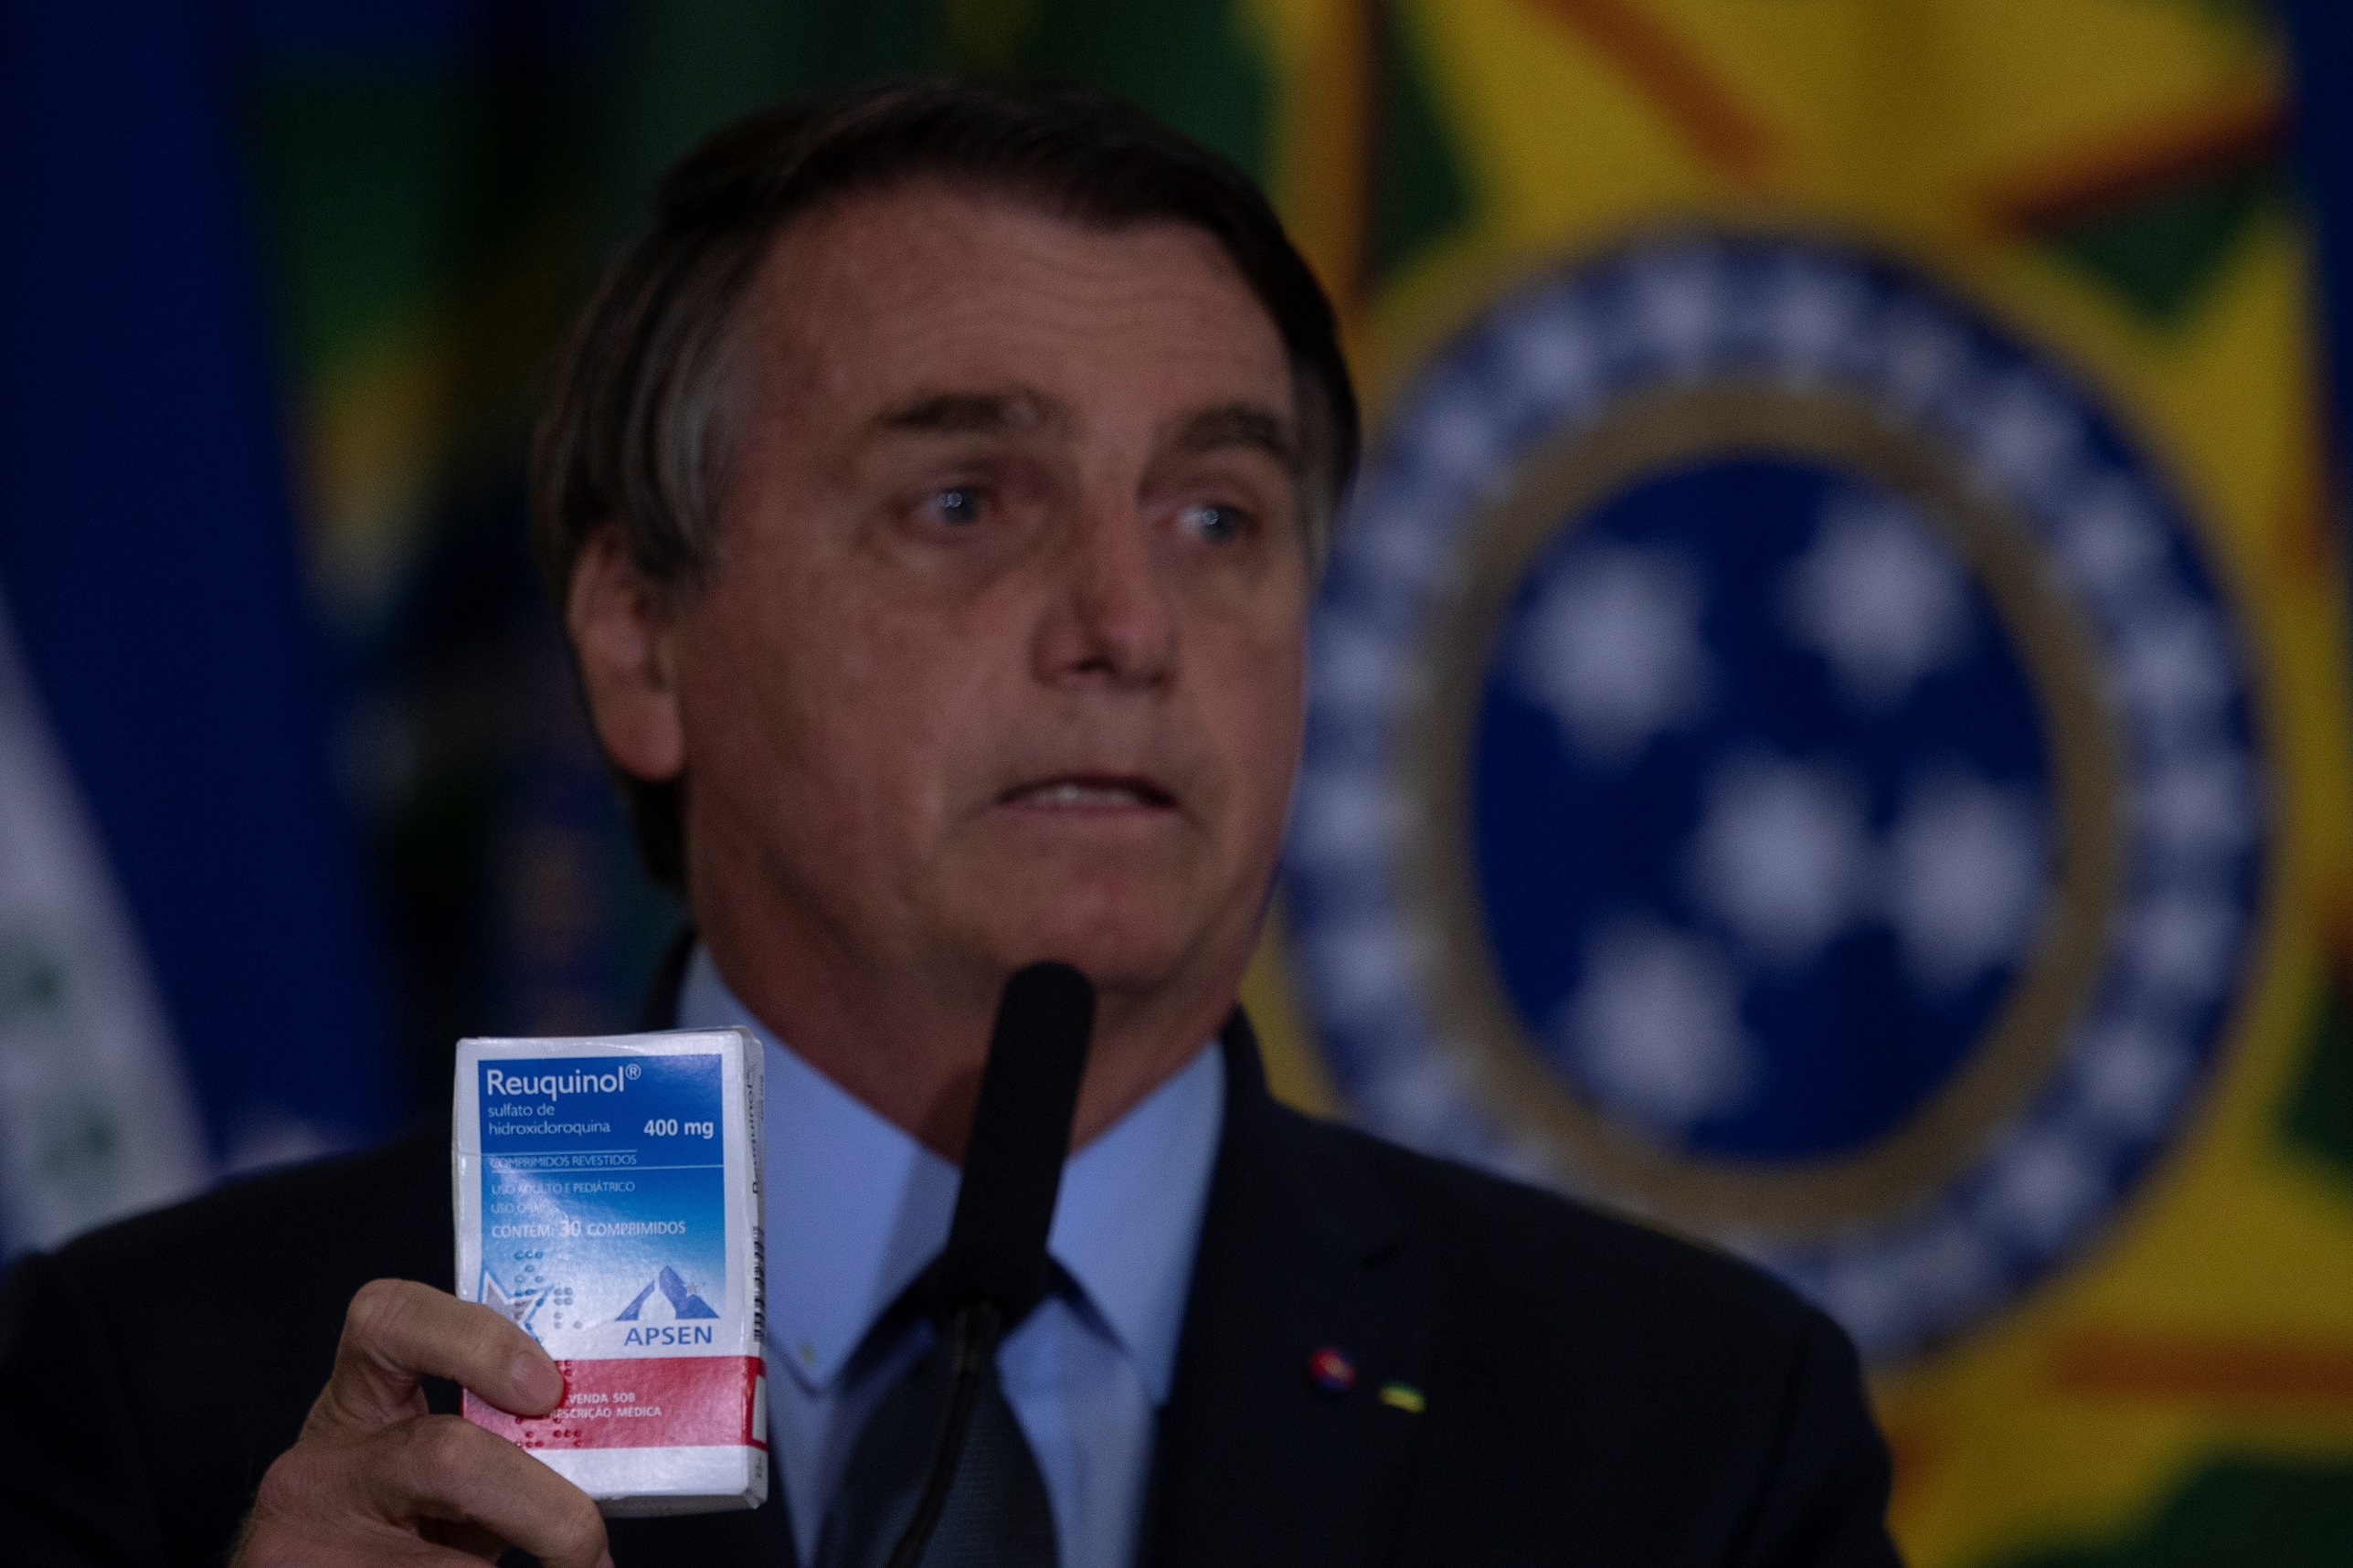 En la imagen, el presidente de Brasil, Jair Bolsonaro, muestra un medicamento de cloroquina (Foto: EFE/Joédson Alves)
